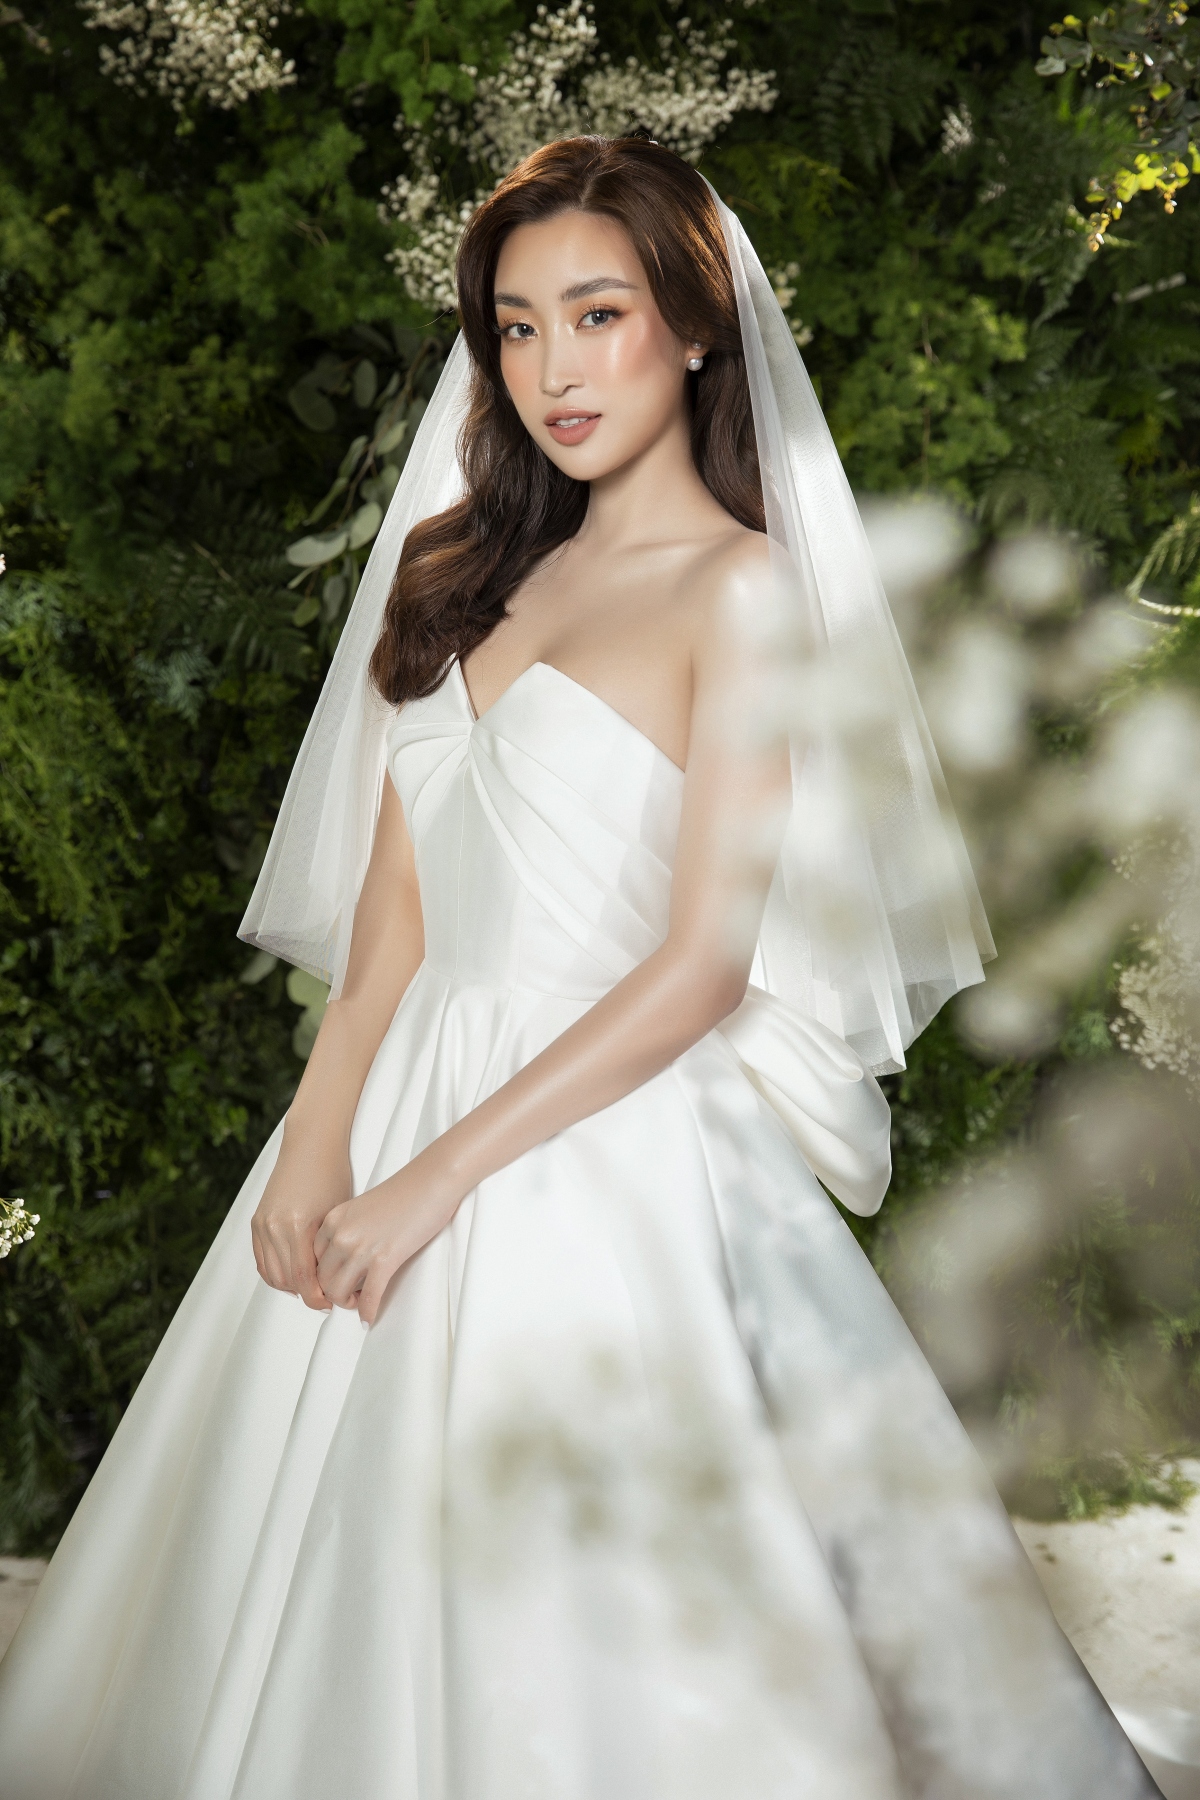 Hoa hậu Đỗ Mỹ Linh hoá cô dâu đẹp dịu dàng trong loạt ảnh mới